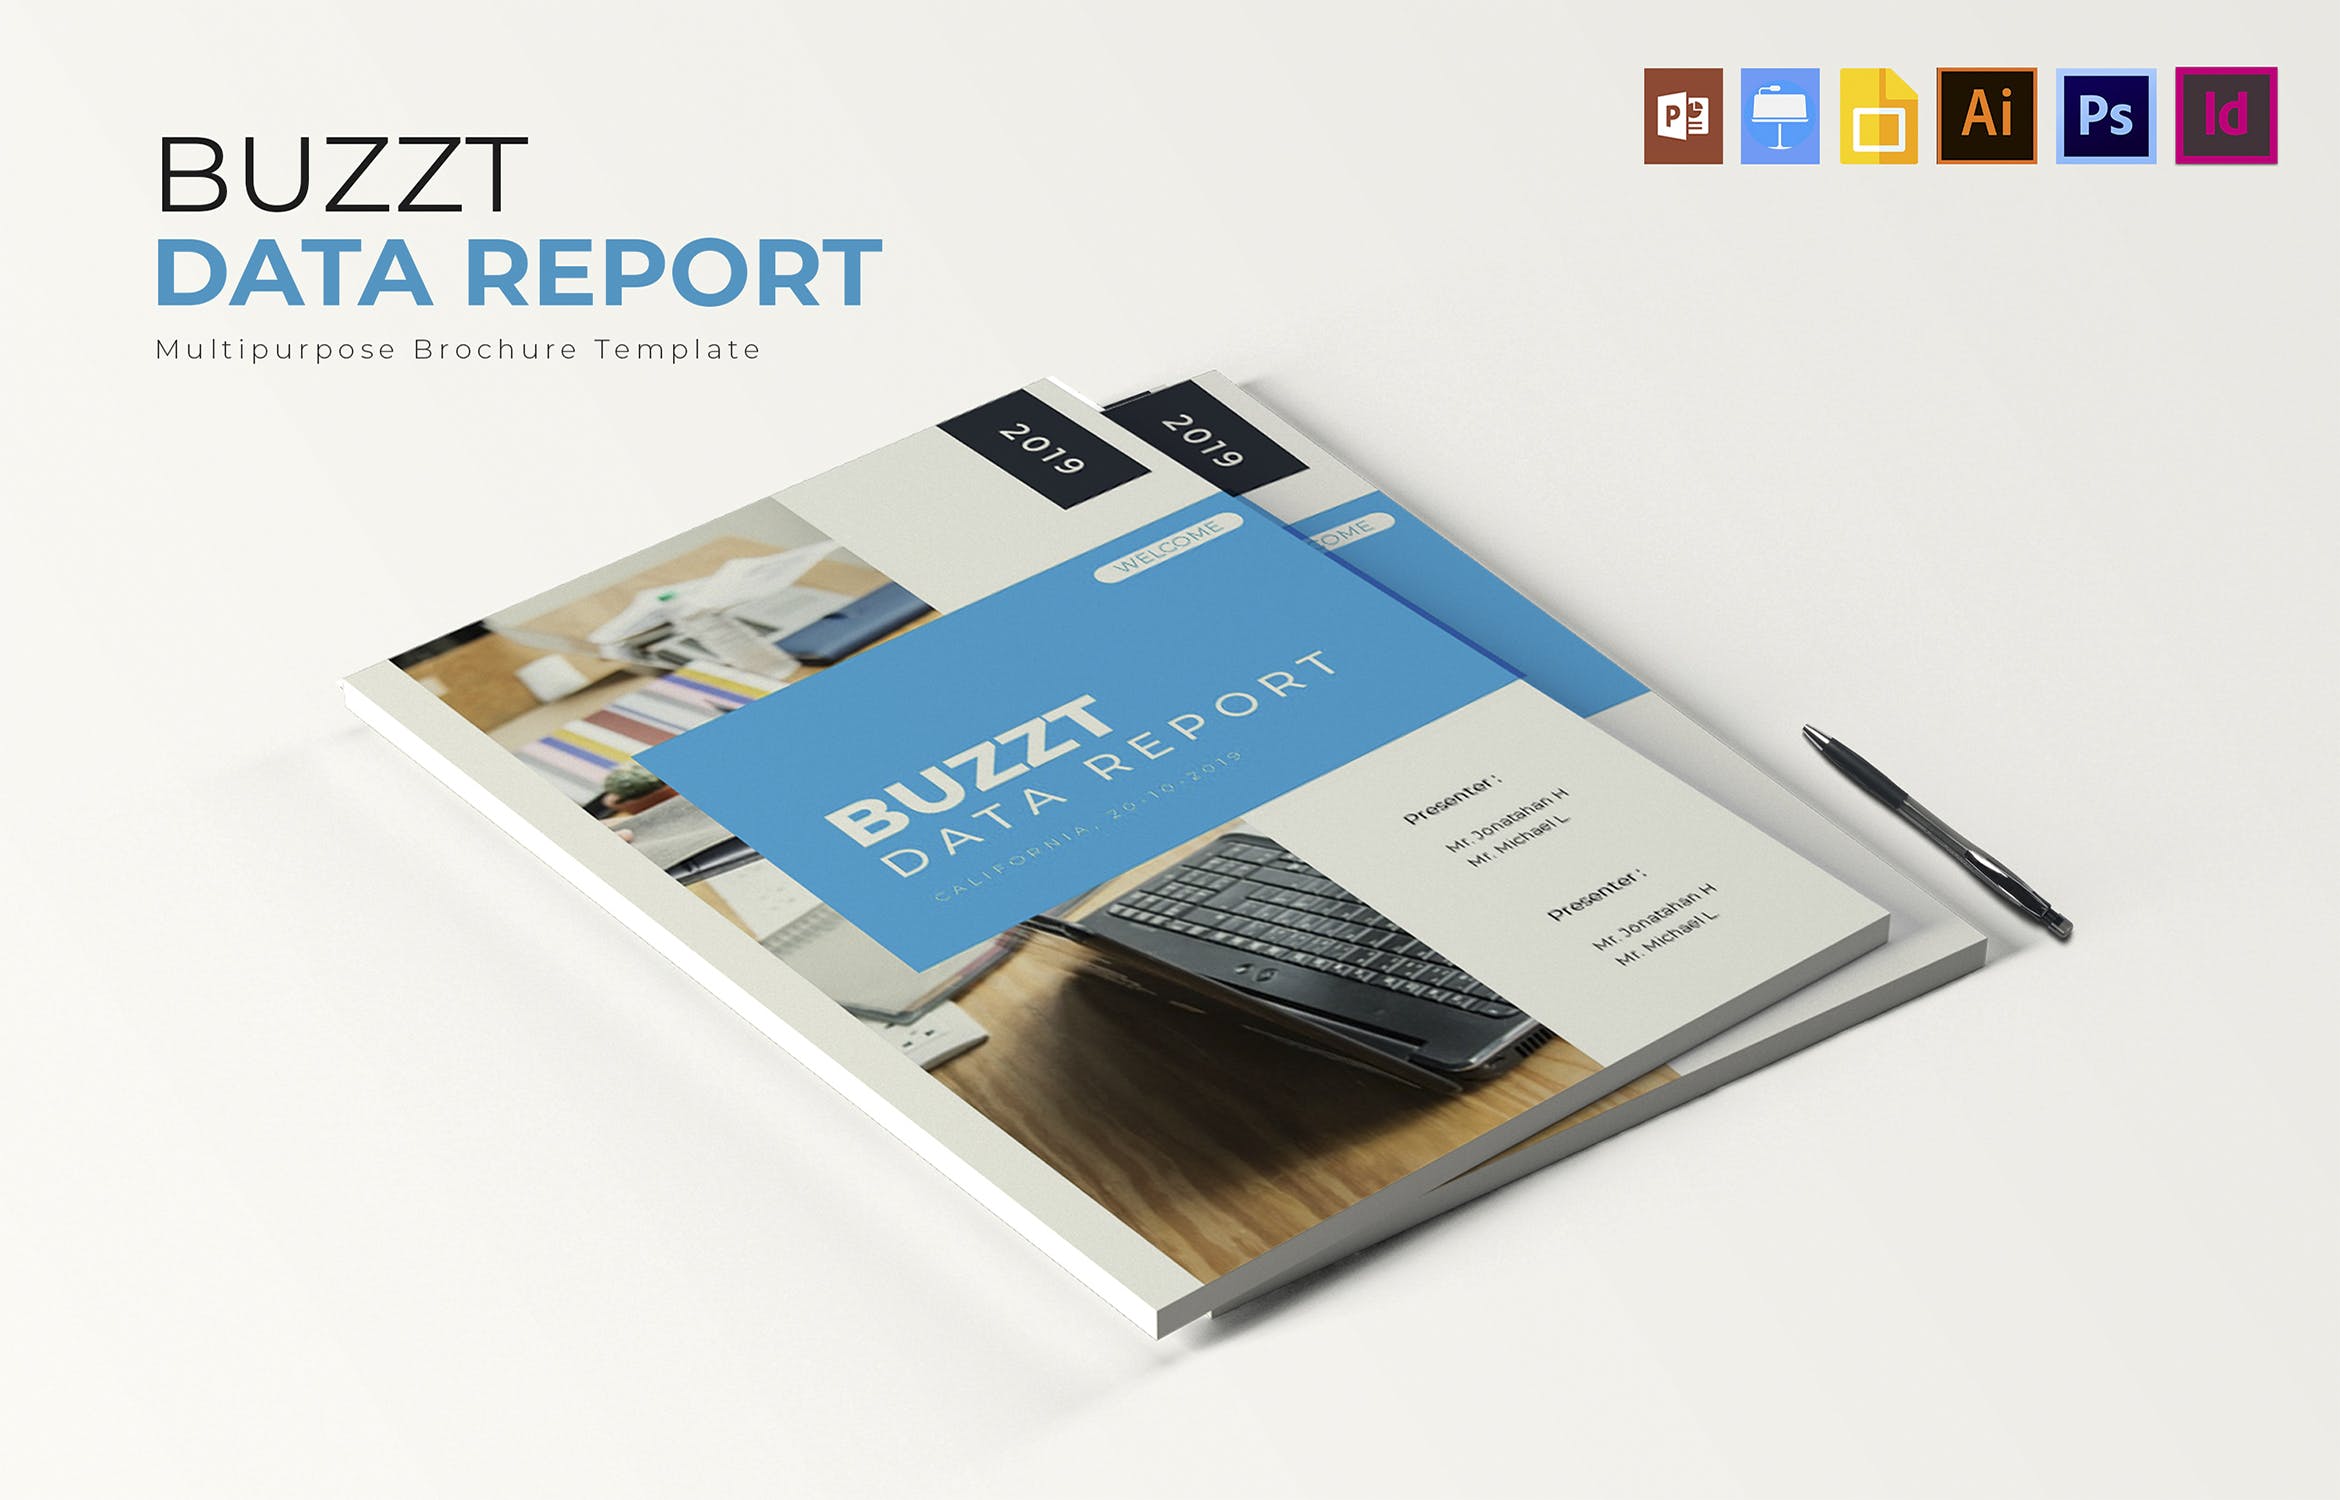 蓝色主题风格数据统计分析报告设计模板 Buzzt Data Report | Brochure Template插图(3)